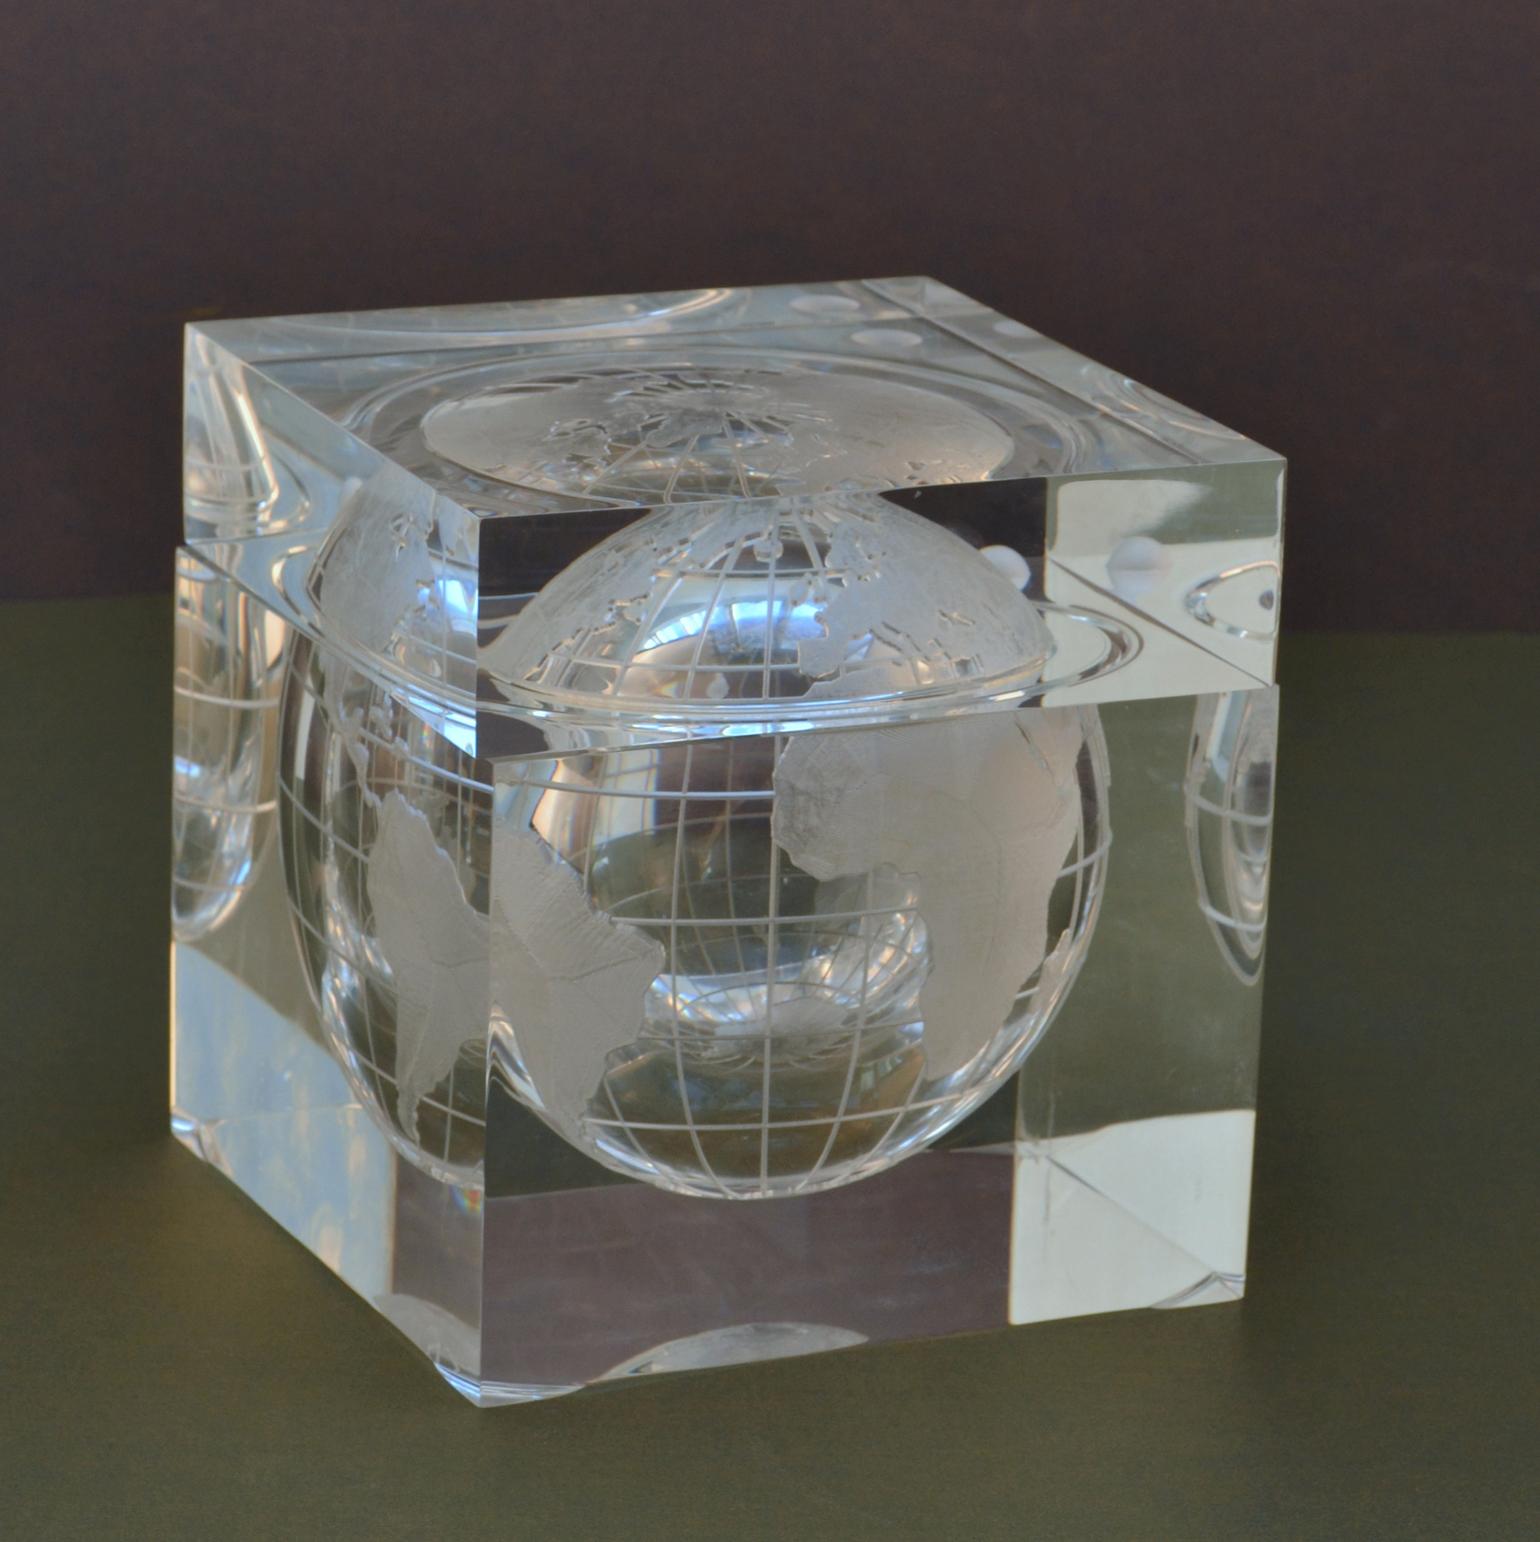 Article de bar en forme de cube en acrylique représentant le monde capturé dans un cube en acrylique qui ressemble à un glaçon. Carte du monde dépolie des continents et de la lune en orbite. Le seau à glace avec globe terrestre suspendu a été conçu